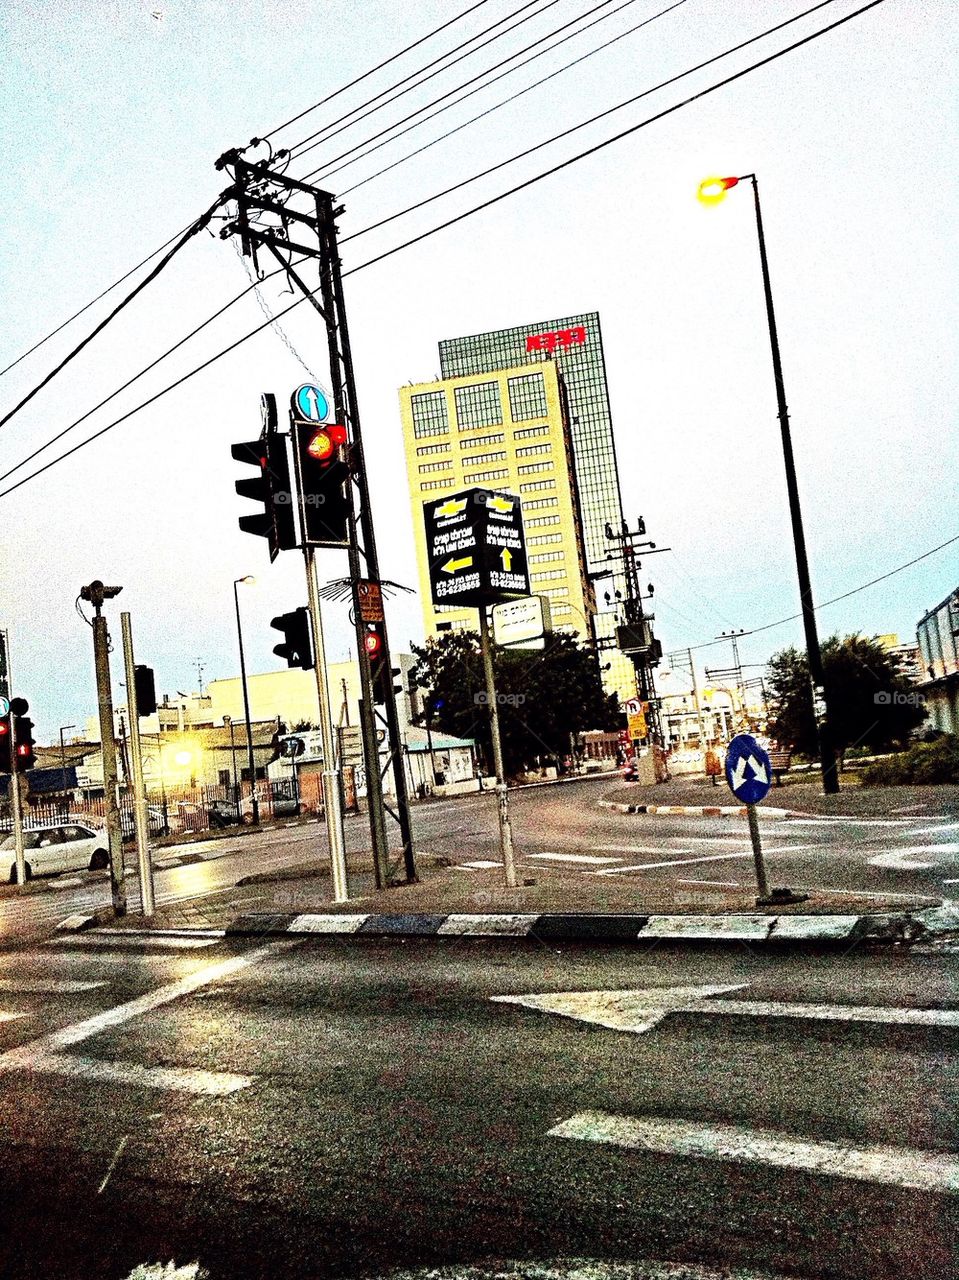 Traffic lights tel aviv 